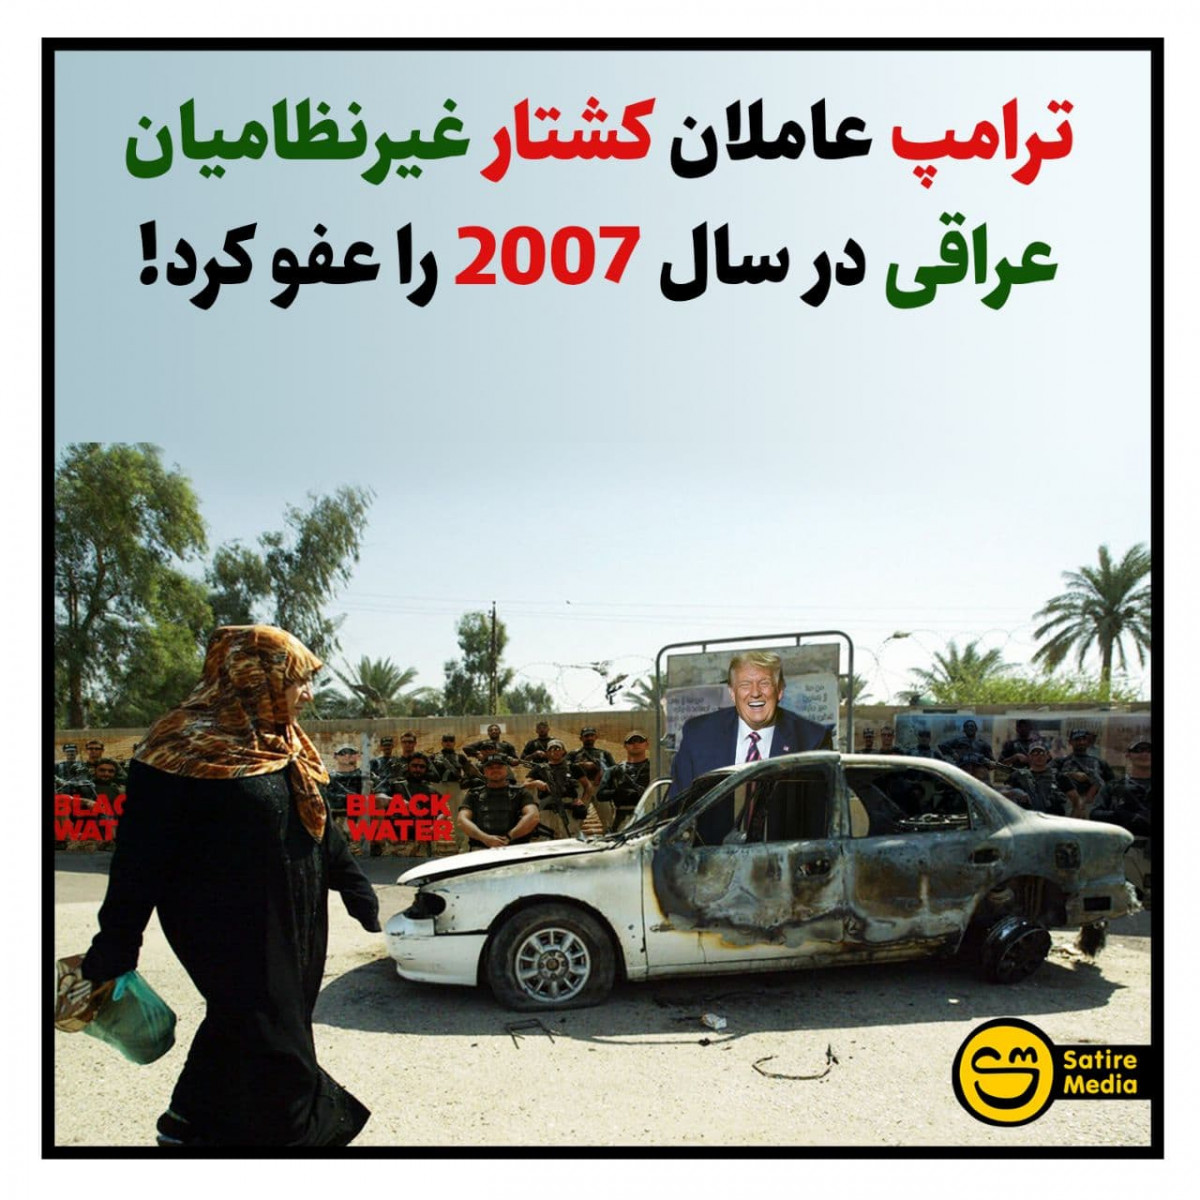 پوستر: ترامپ عاملان کشتار غیرنظامیان عراقی در سال 2007 را عفو کرد